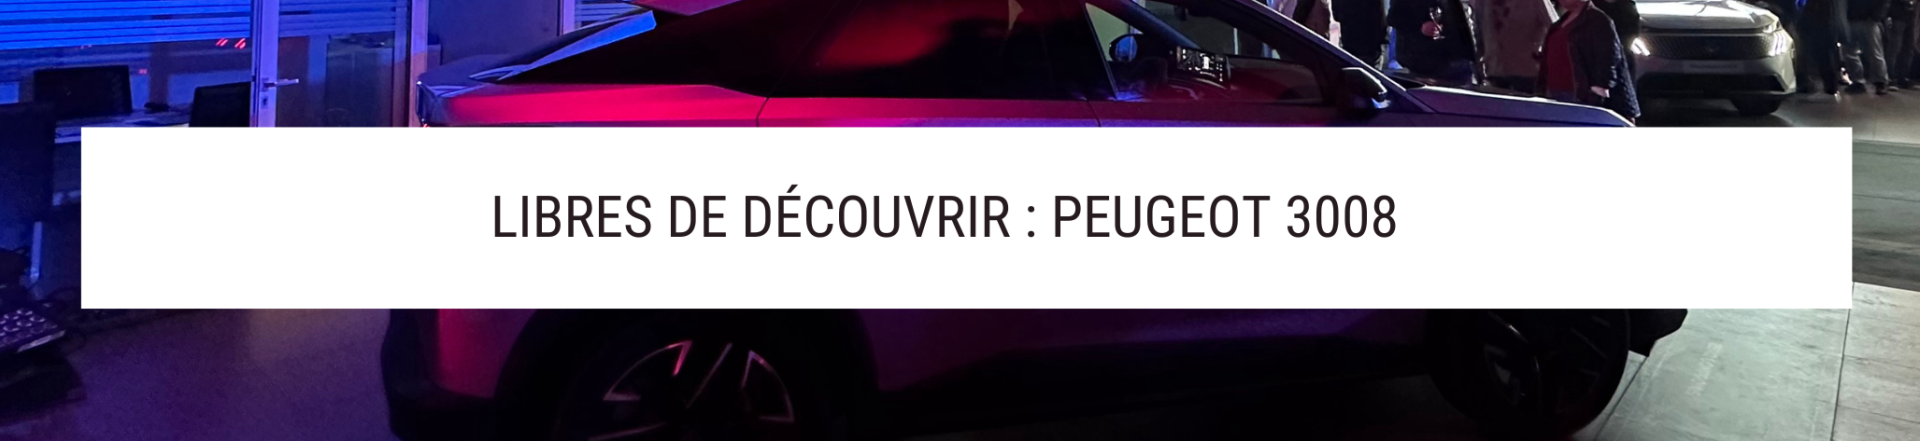 Lancement Peugeot 3008